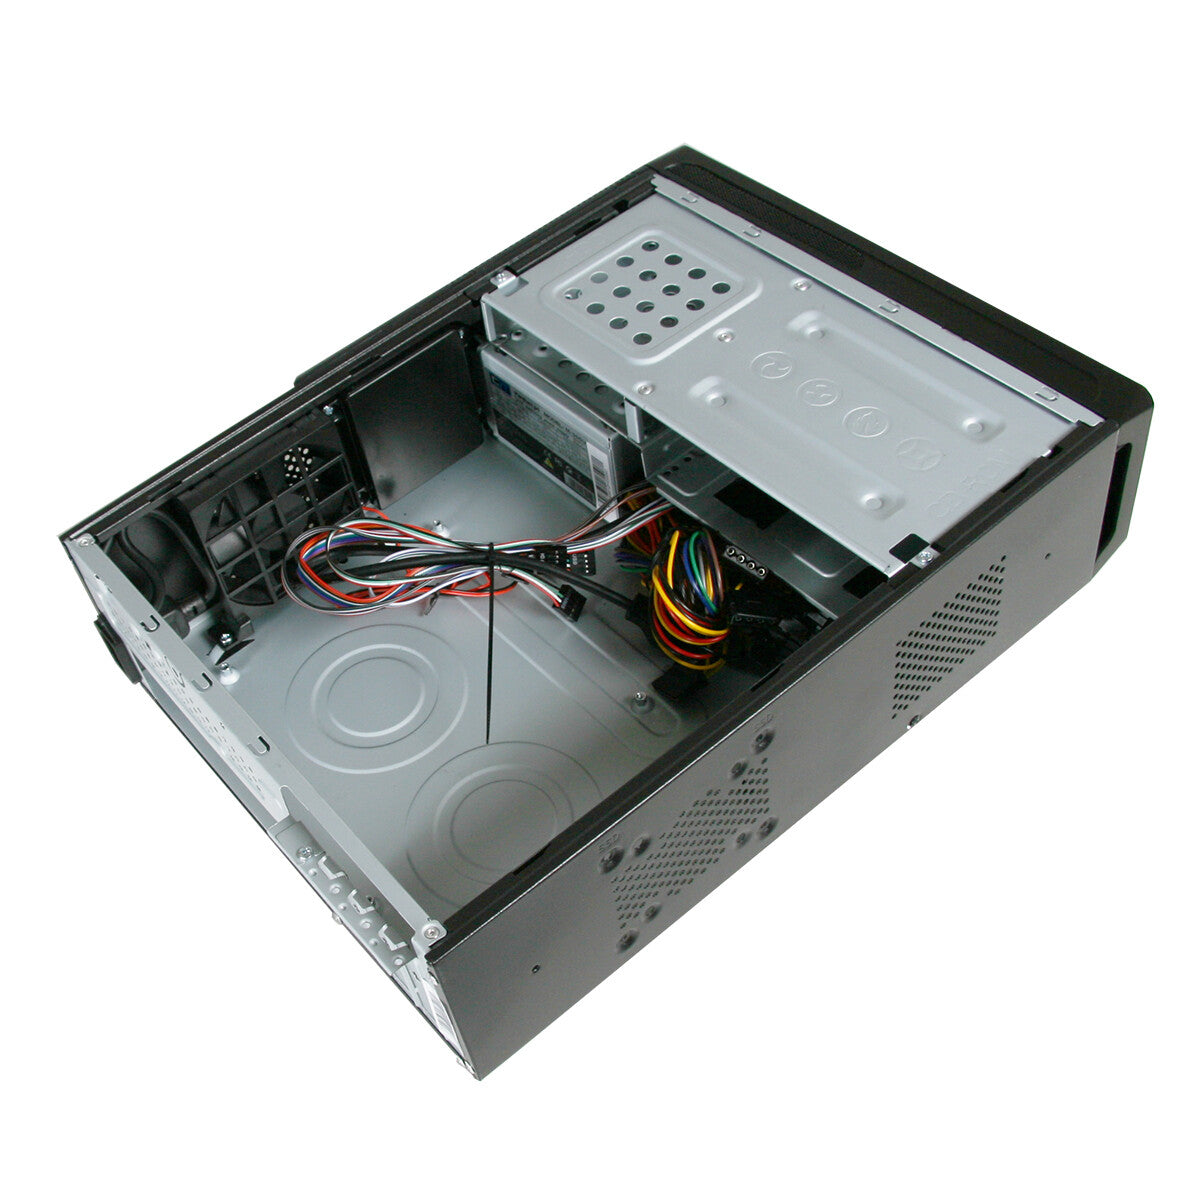 CiT SO14B computer case Micro-ATX Black 300 W